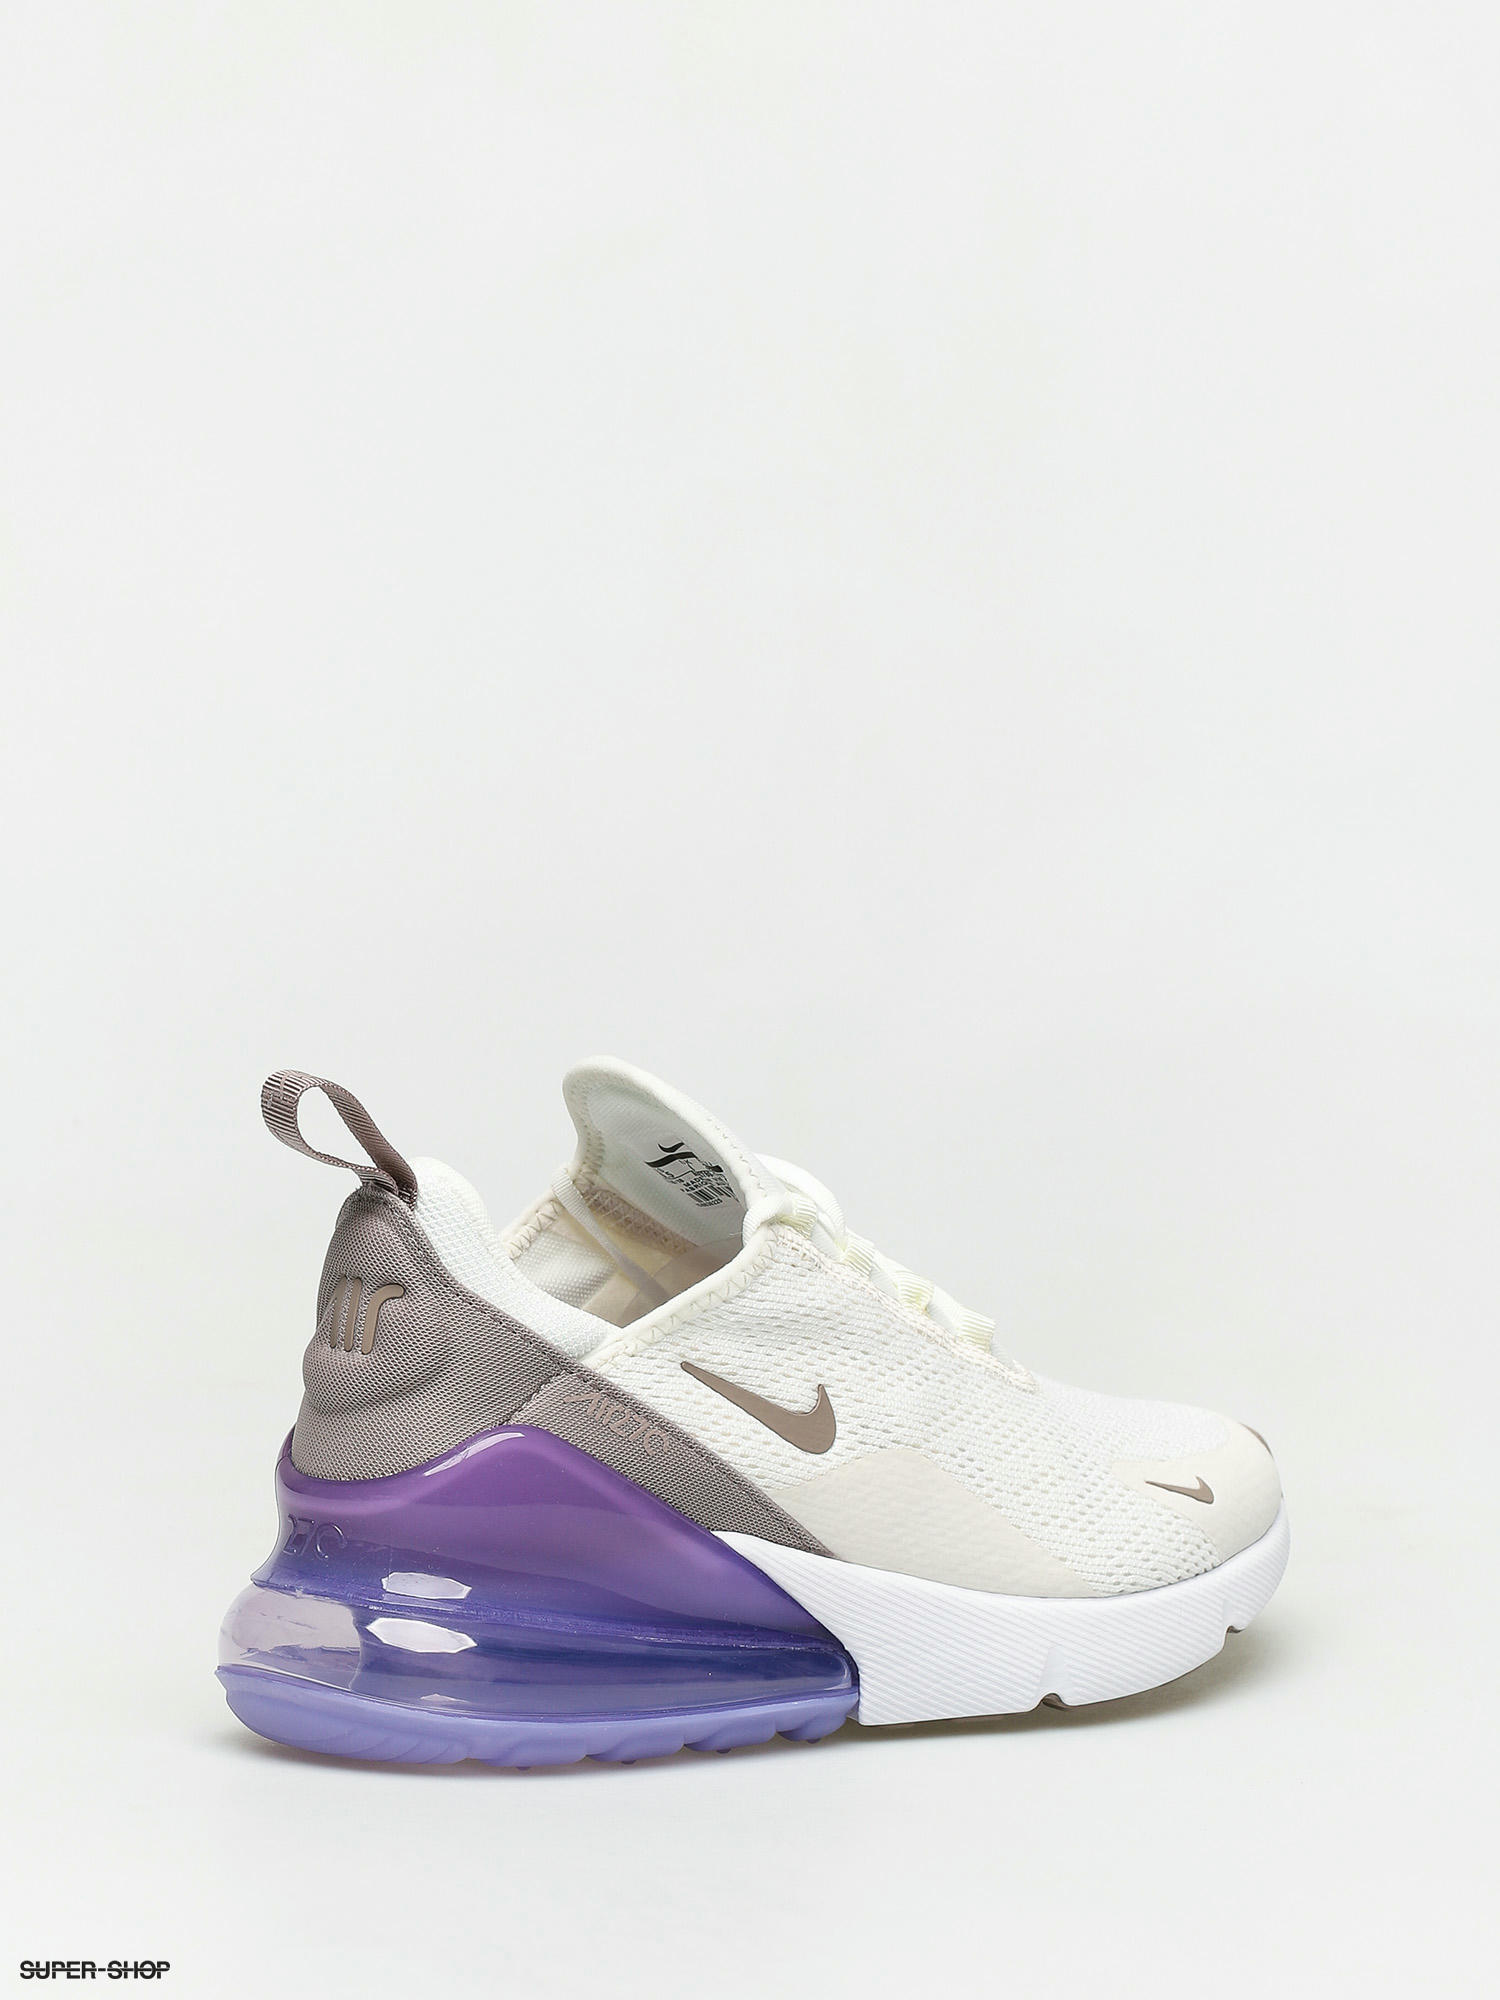 Nike Air Max 270 Sail Pumice Space Purple Lilac White AH6789 107 Women 7.5  Shoes